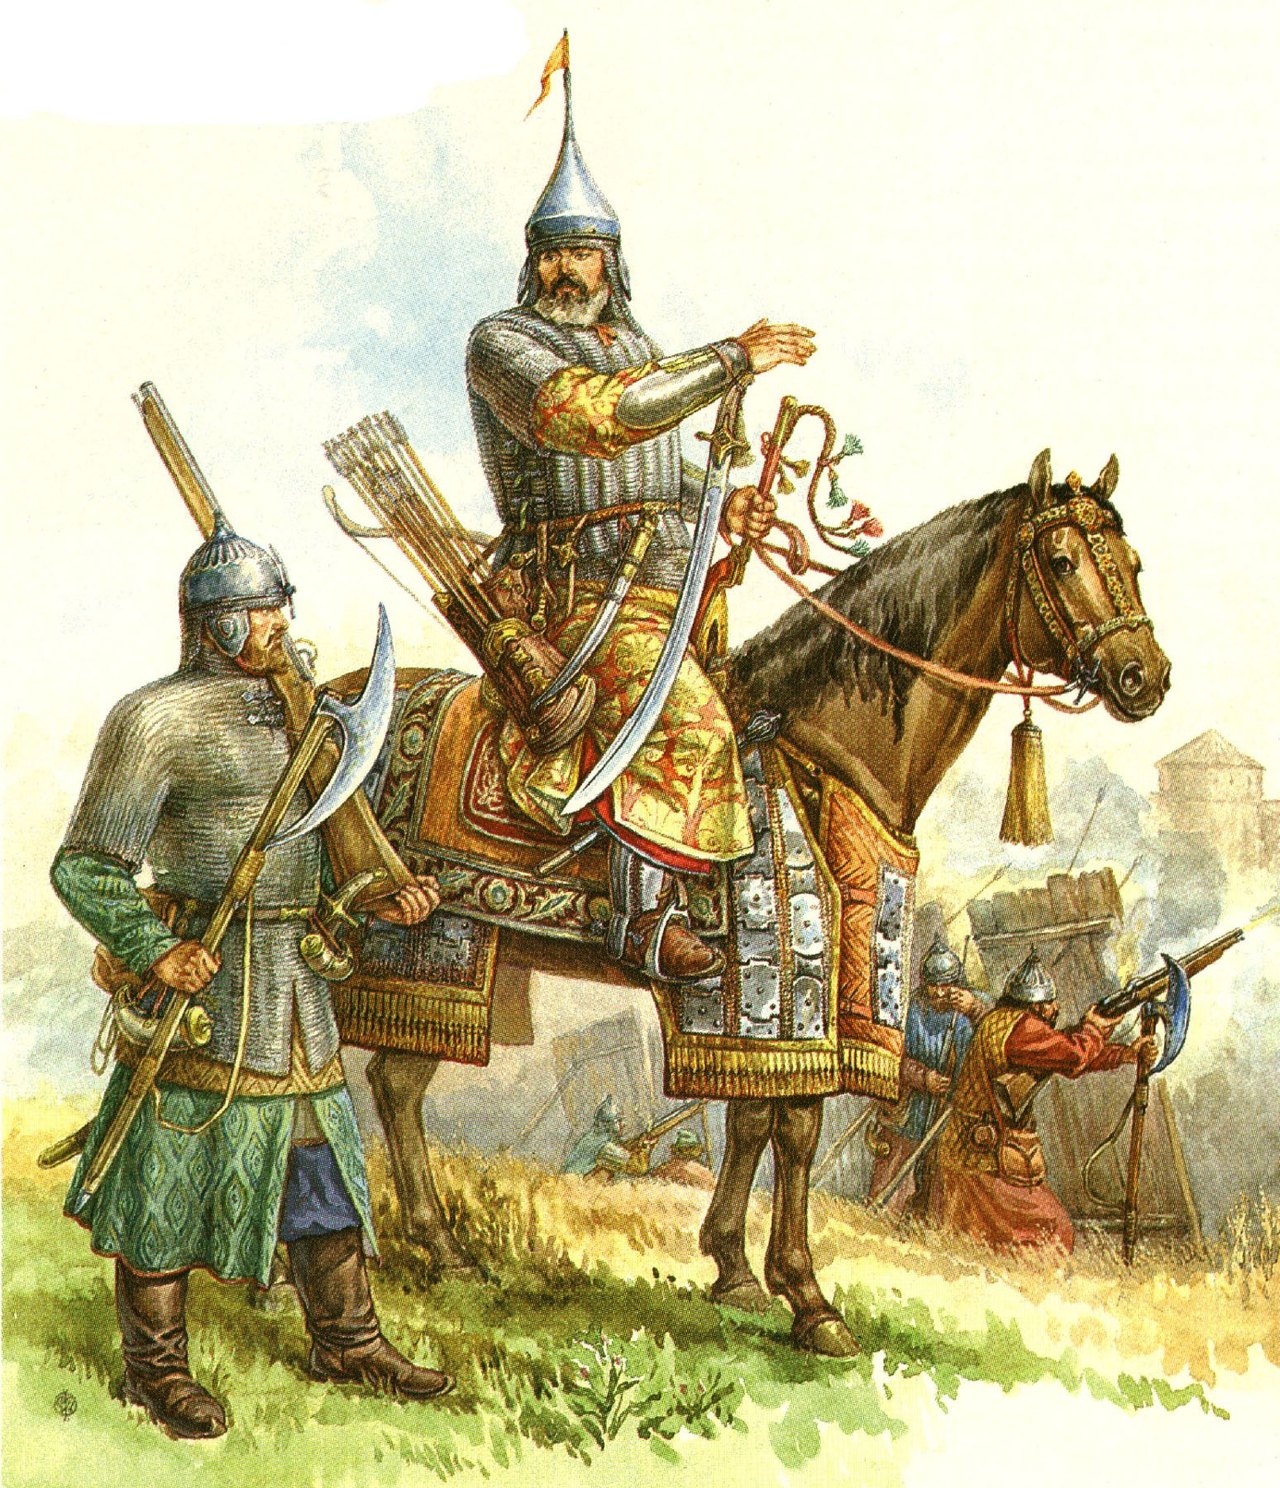 1556 г. Иван IV Грозный выпускает Уложение о службе и реформирует армию